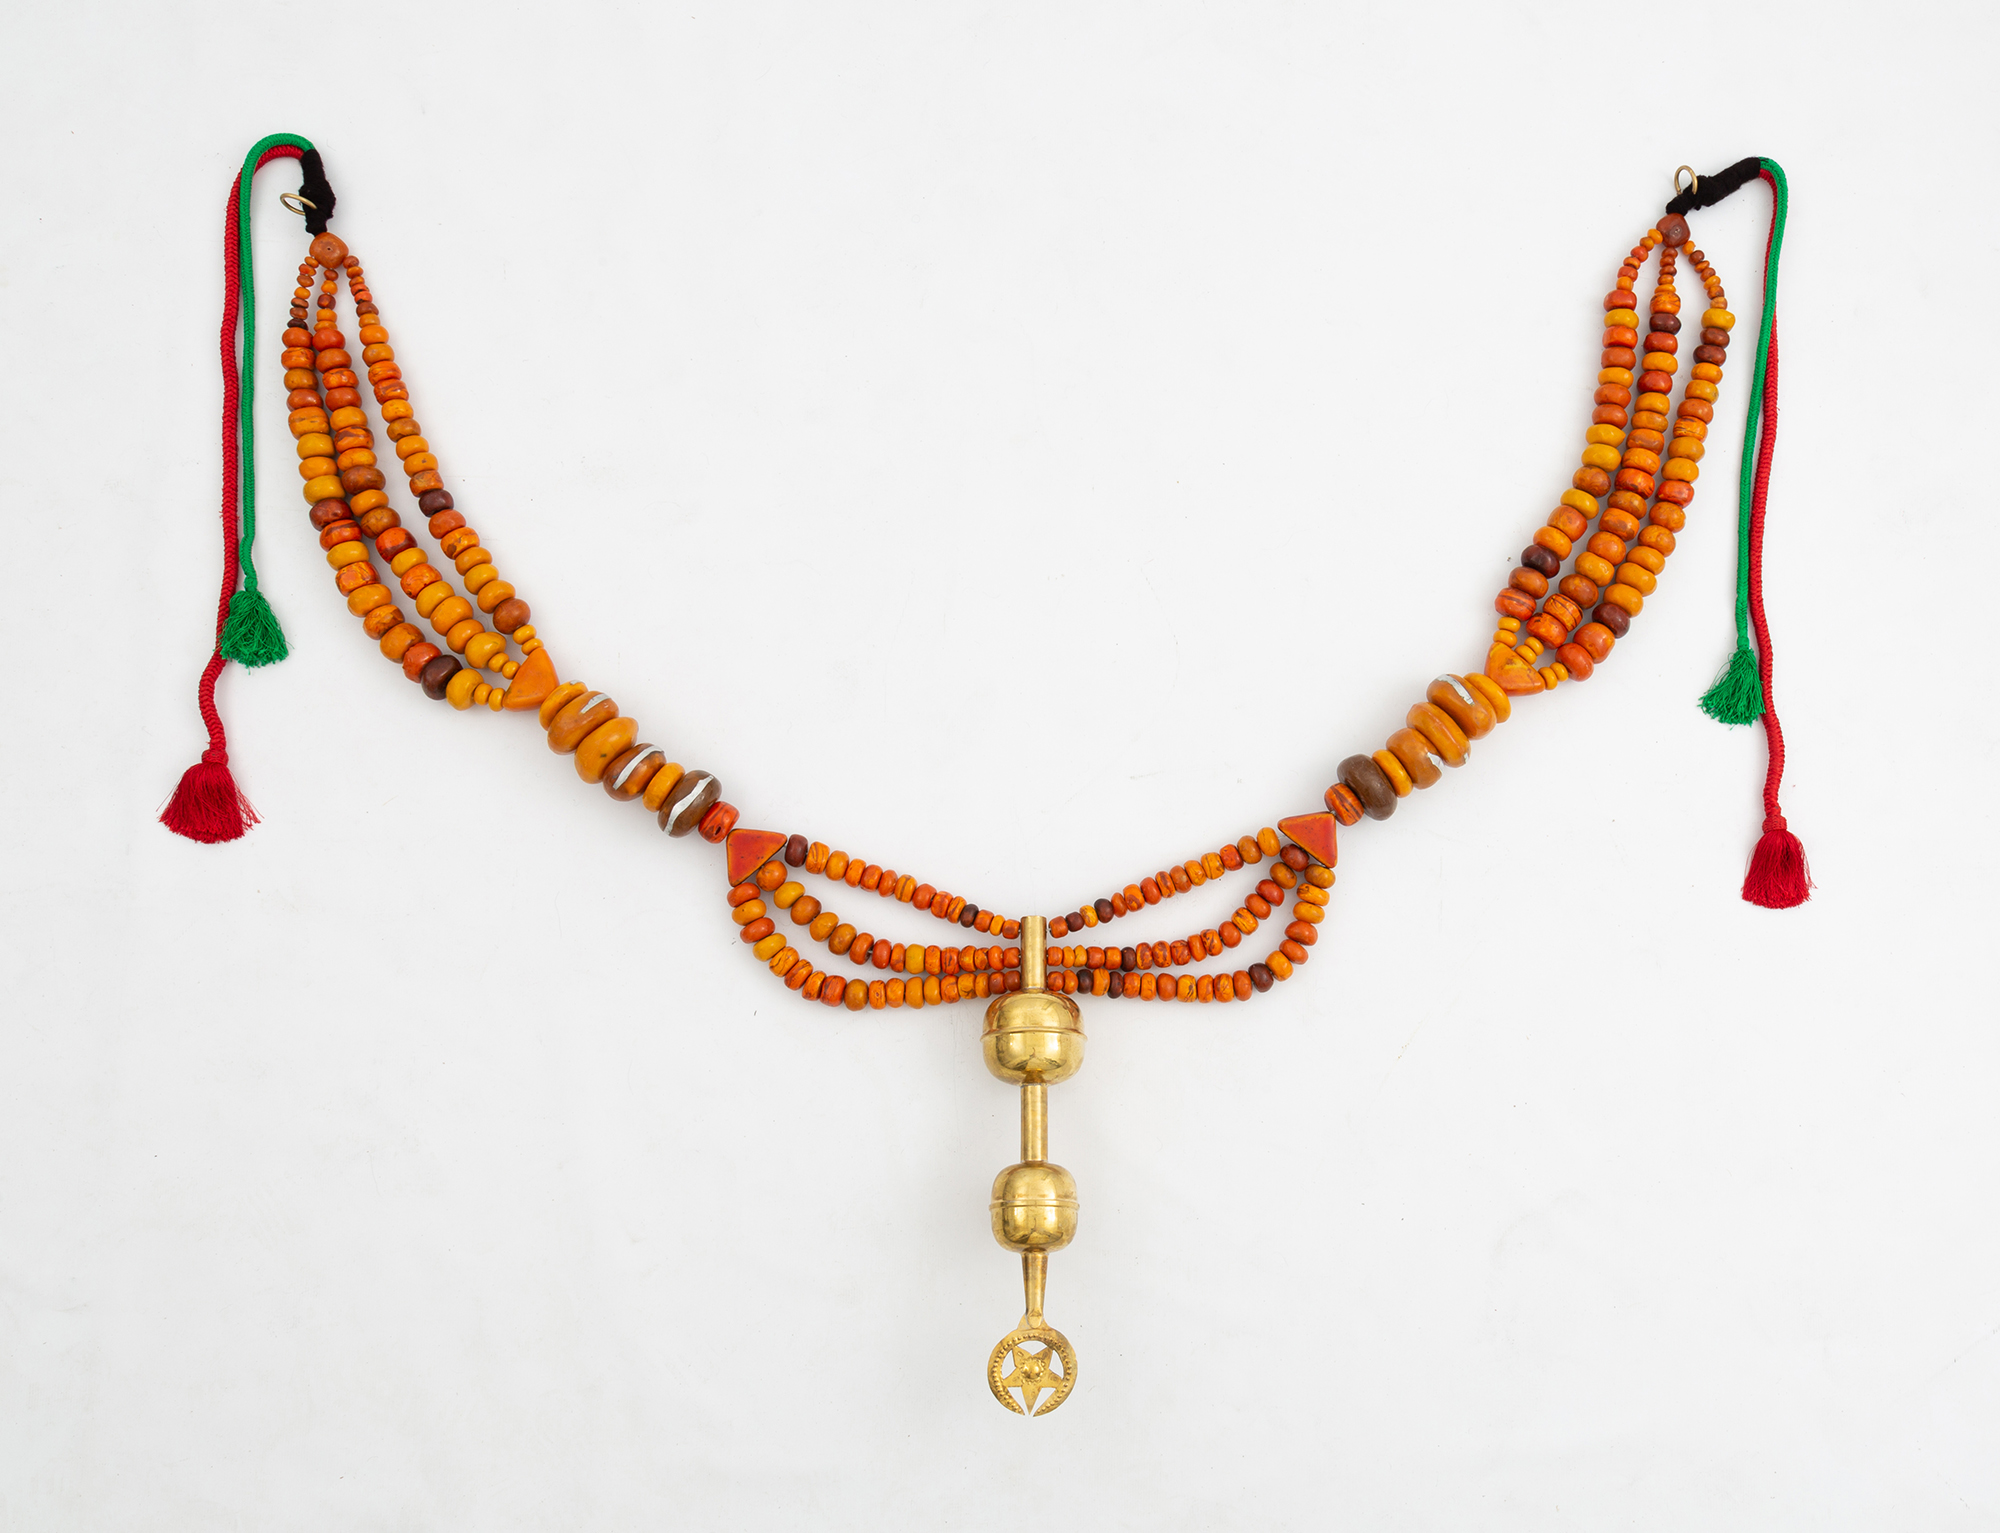 Légende à l’envers II, 2019
Perles Amazigh en résine, bijoux en argent, cable acier, laine et patères en cuivre
100 x 130 x 14 cm